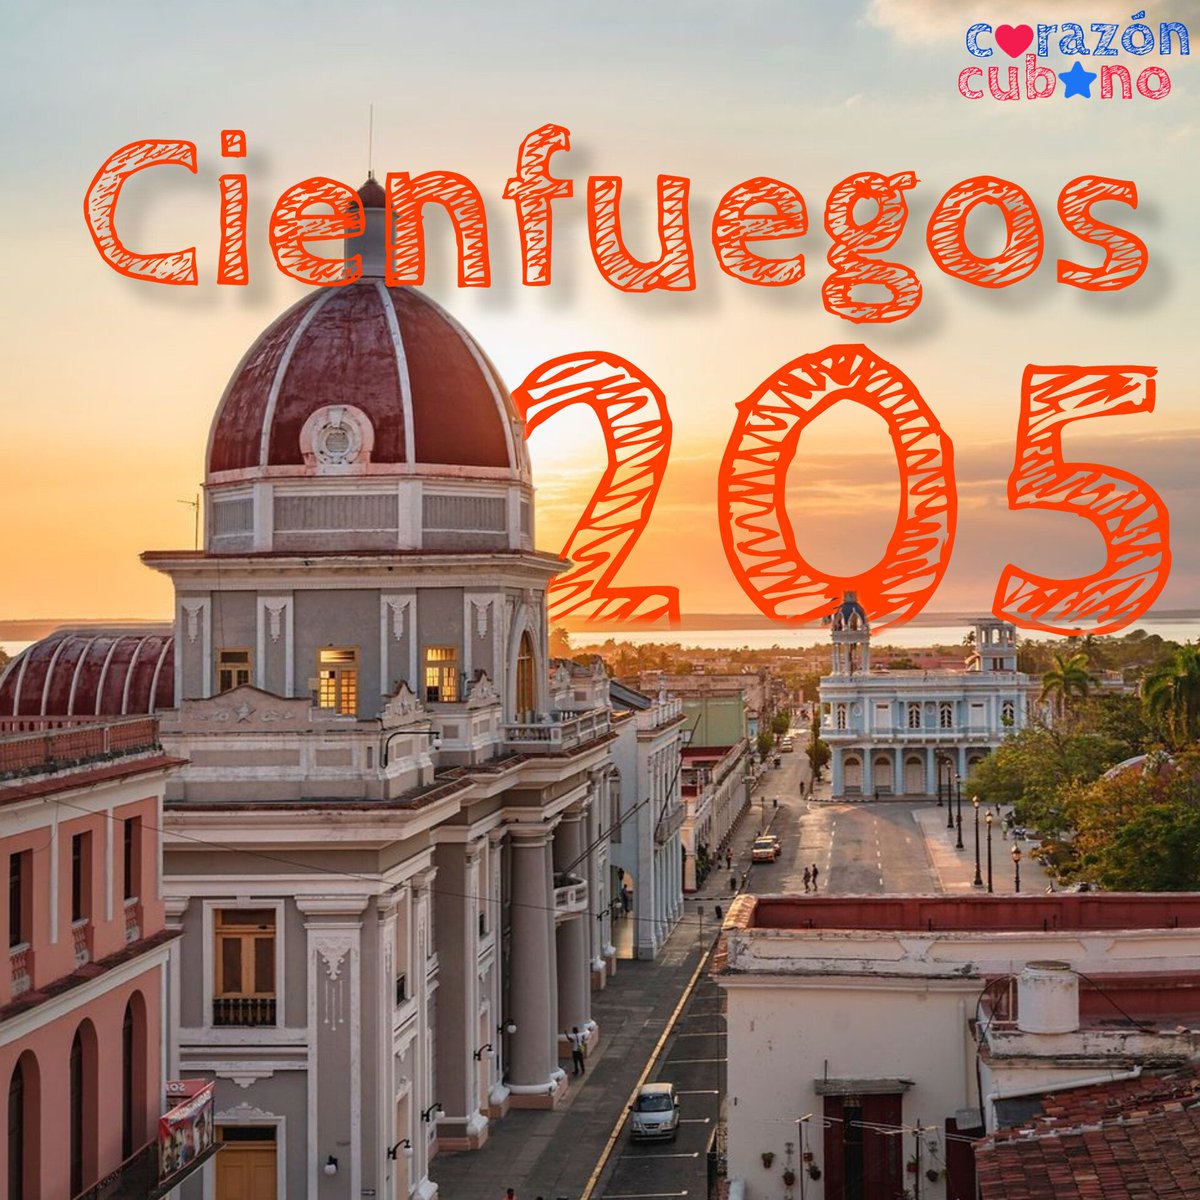 🙌🏻🇨🇺 Hoy la provincia de Cienfuegos arriba al aniversario 205 de su fundación, llegue las felicitaciones desde la familia cederista. #CDRCuba